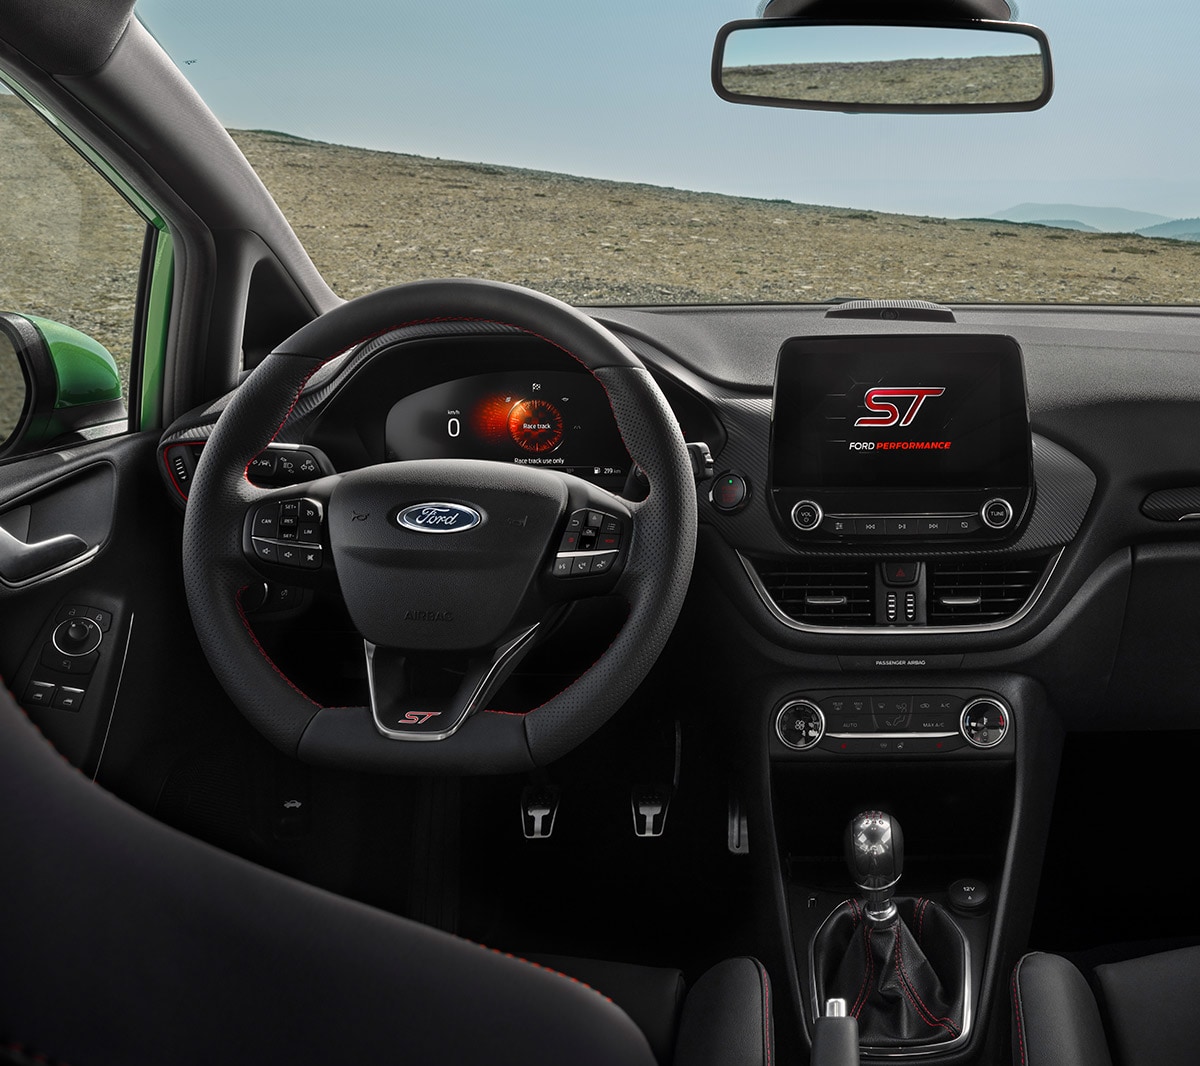 Ford Fiesta ST. Vue intérieure du poste de conduite, avec volant, écran tactile et tableau de bord numérique.